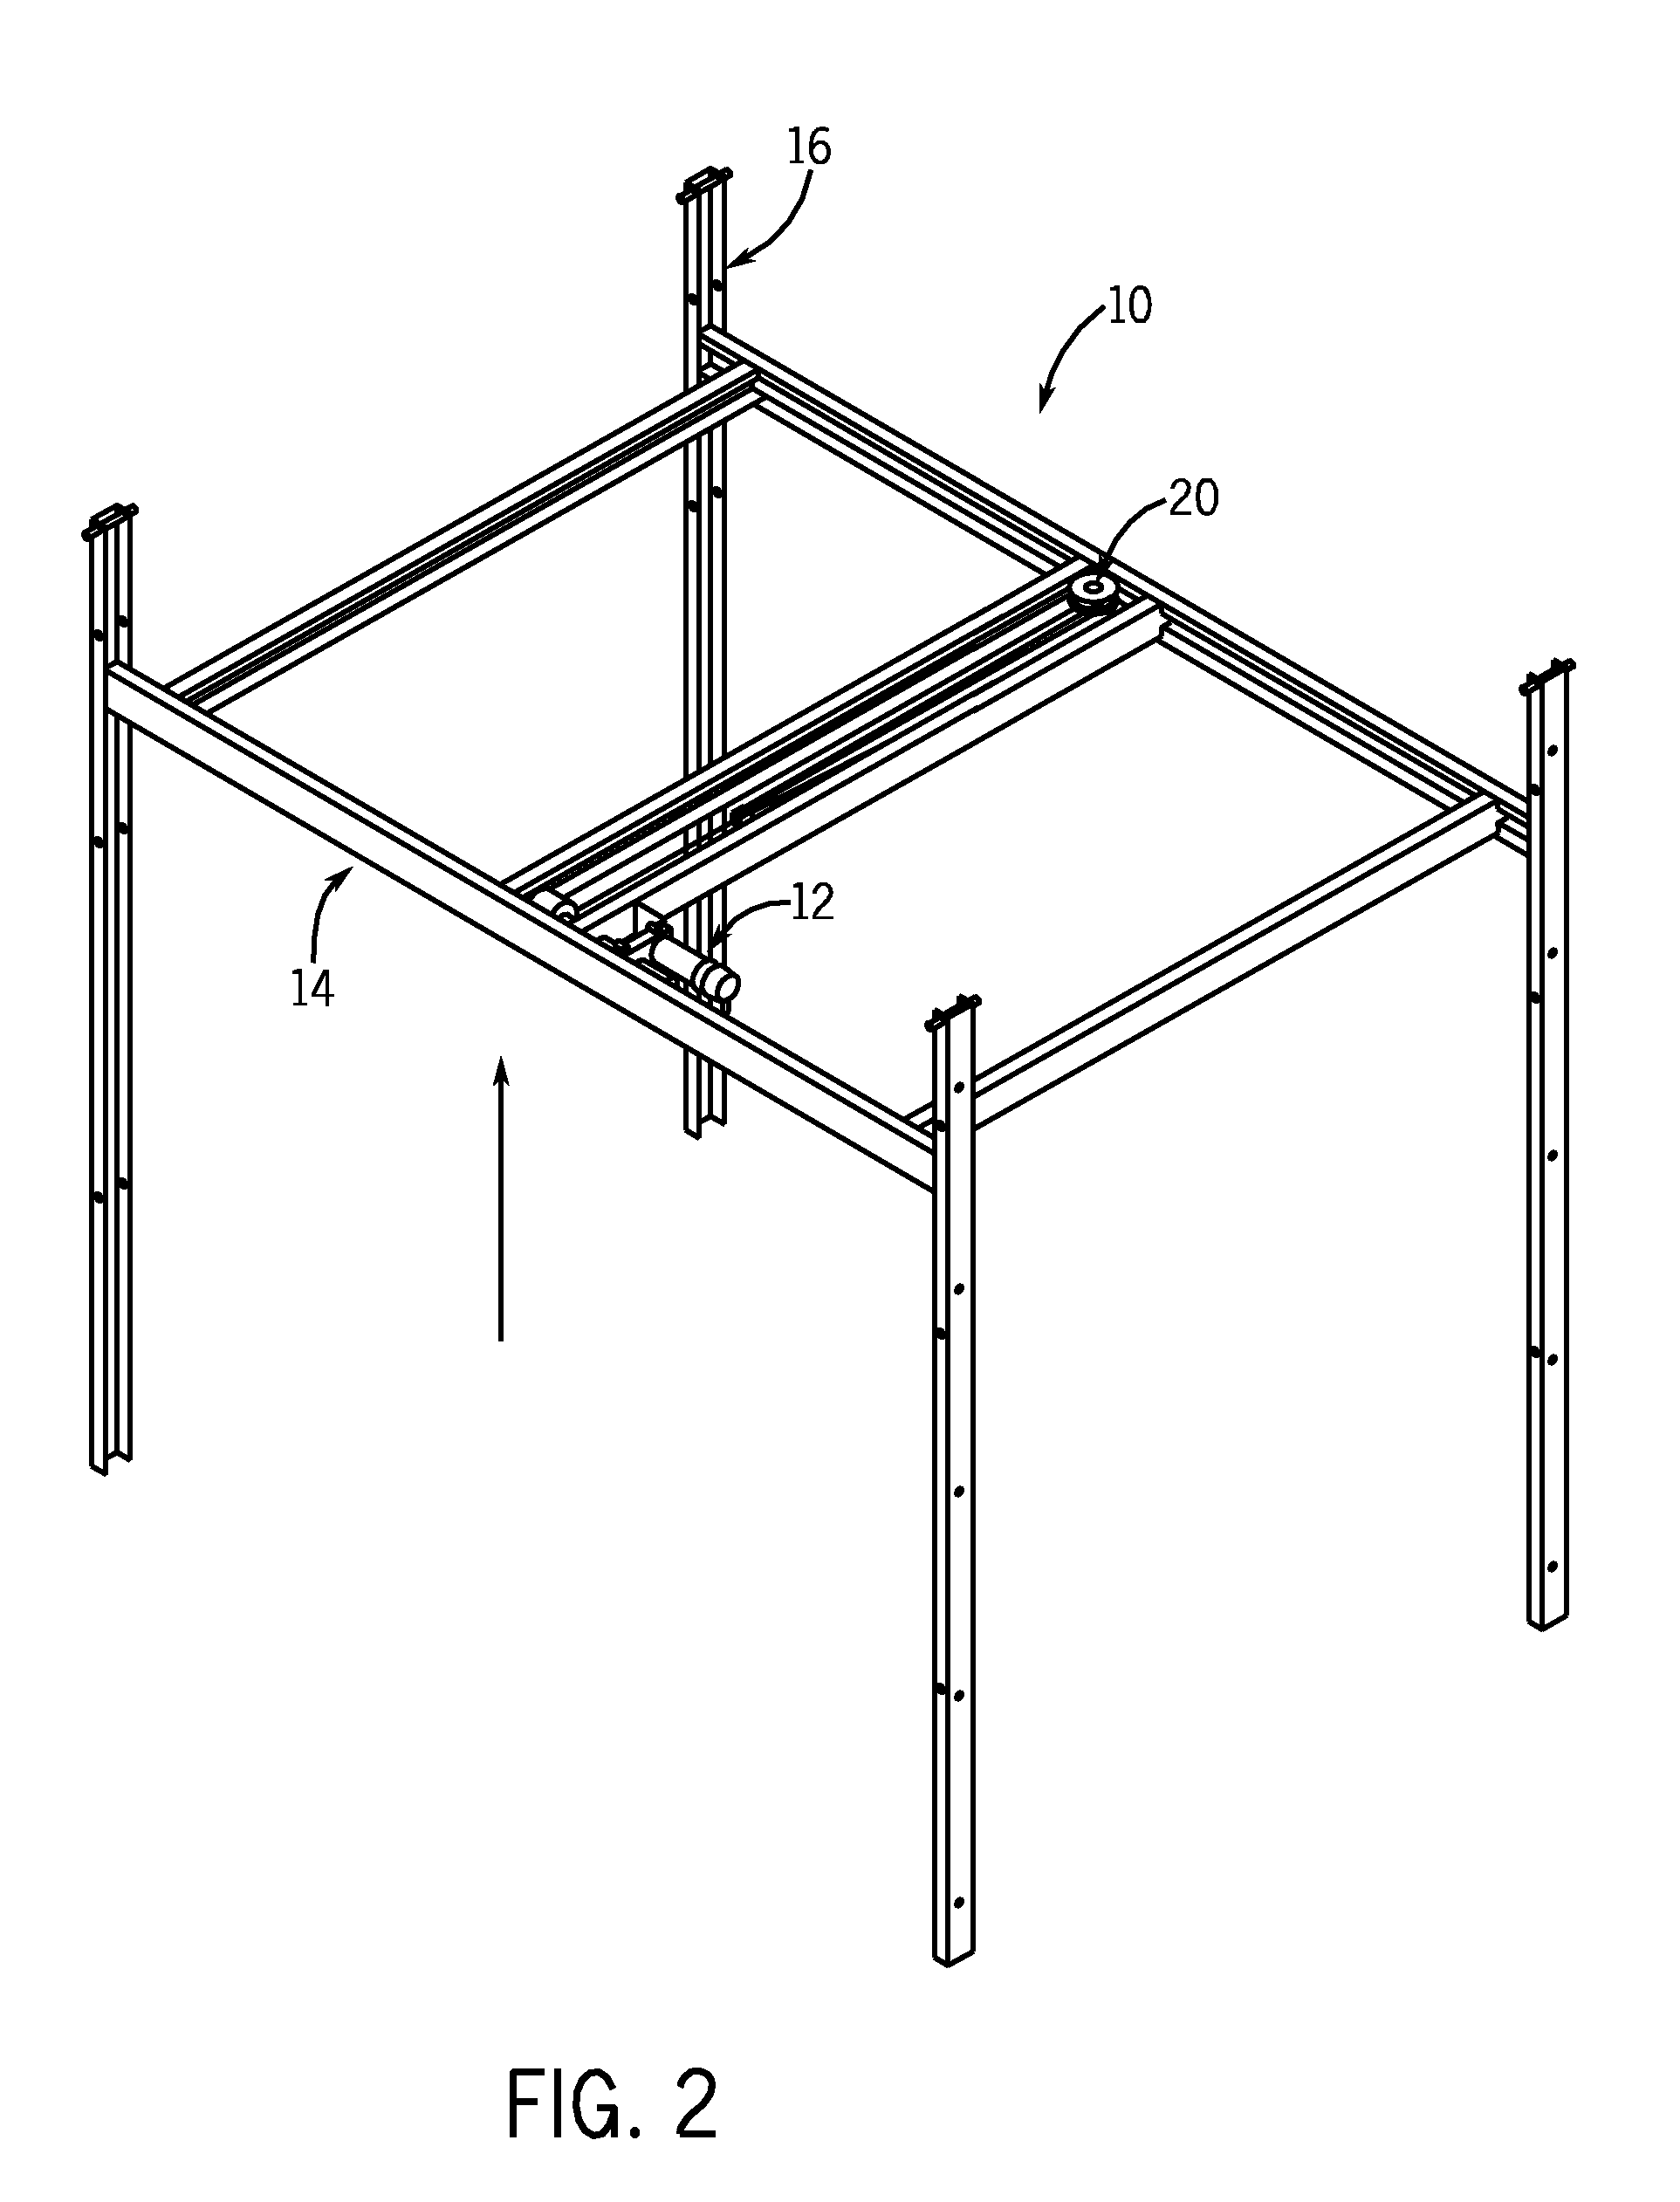 In-vehicle lift mechanism